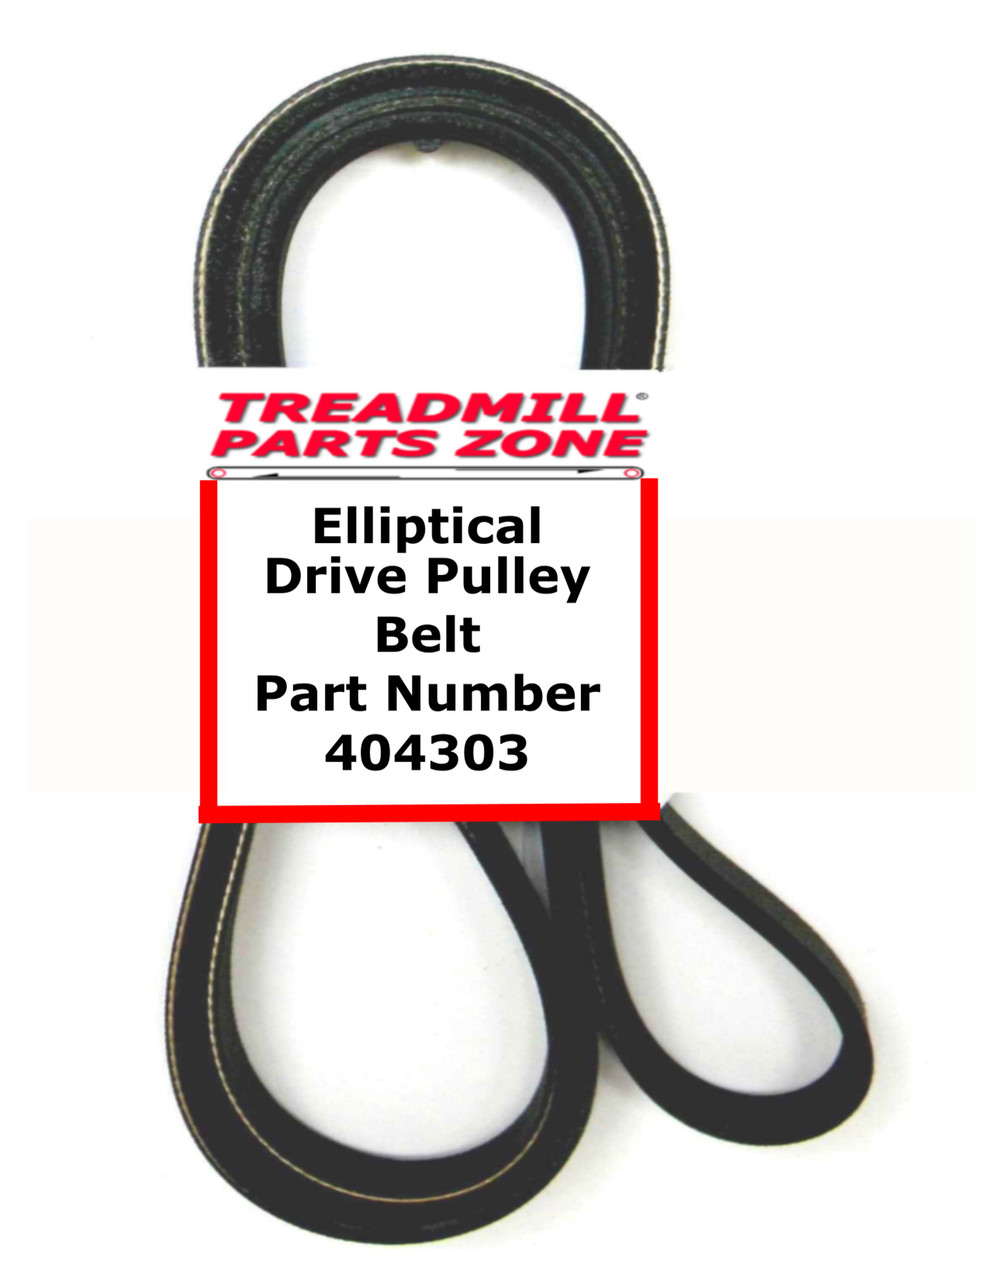 Welso Elliptical Model WLEL15018.0 Drive Pulley Belt Part Number 404303